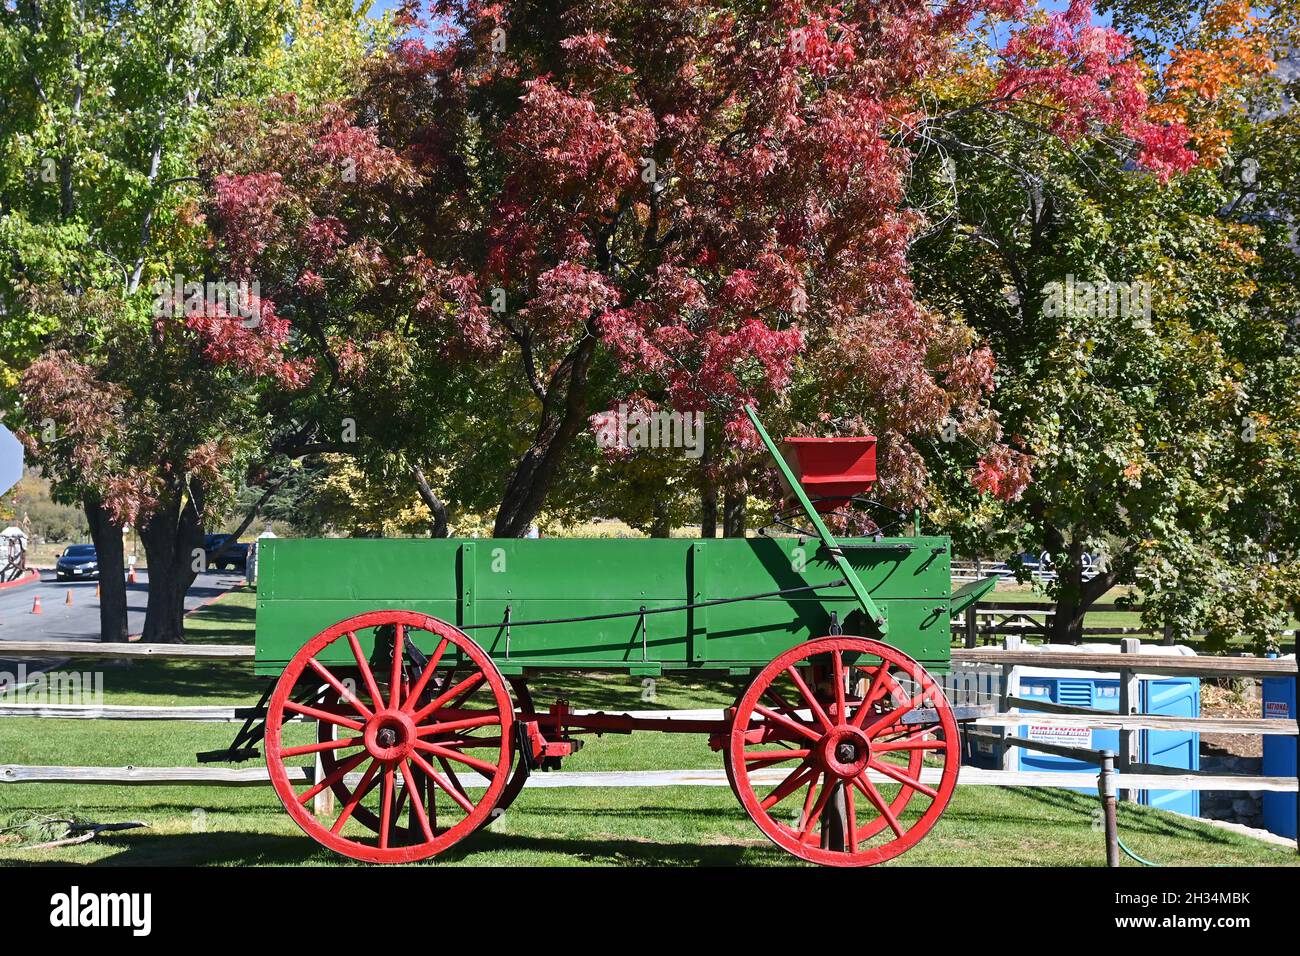 OAK GLEN, CALIFORNIE - 10 octobre 2021 : chariot coloré et feuillage d'automne à l'entrée de Los Rios Rancho, la plus grande ferme Apple de Californie du Sud. Banque D'Images